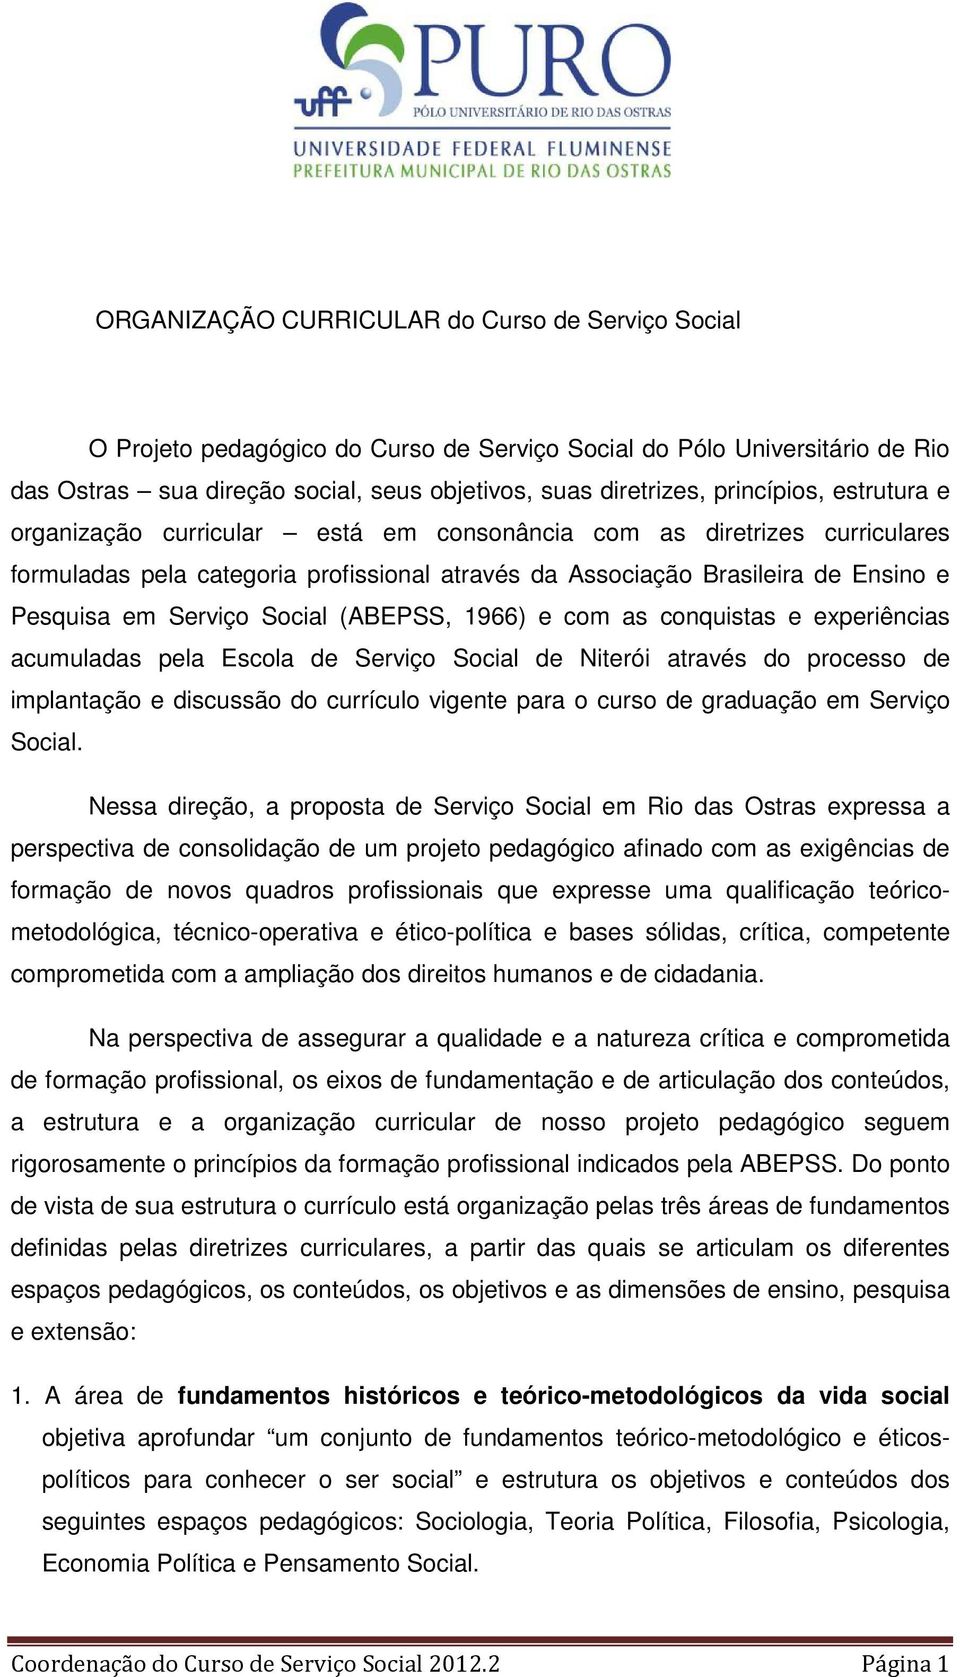 Serviço Social (ABEPSS, 1966) e com as conquistas e experiências acumuladas pela Escola de Serviço Social de Niterói através do processo de implantação e discussão do currículo vigente para o curso